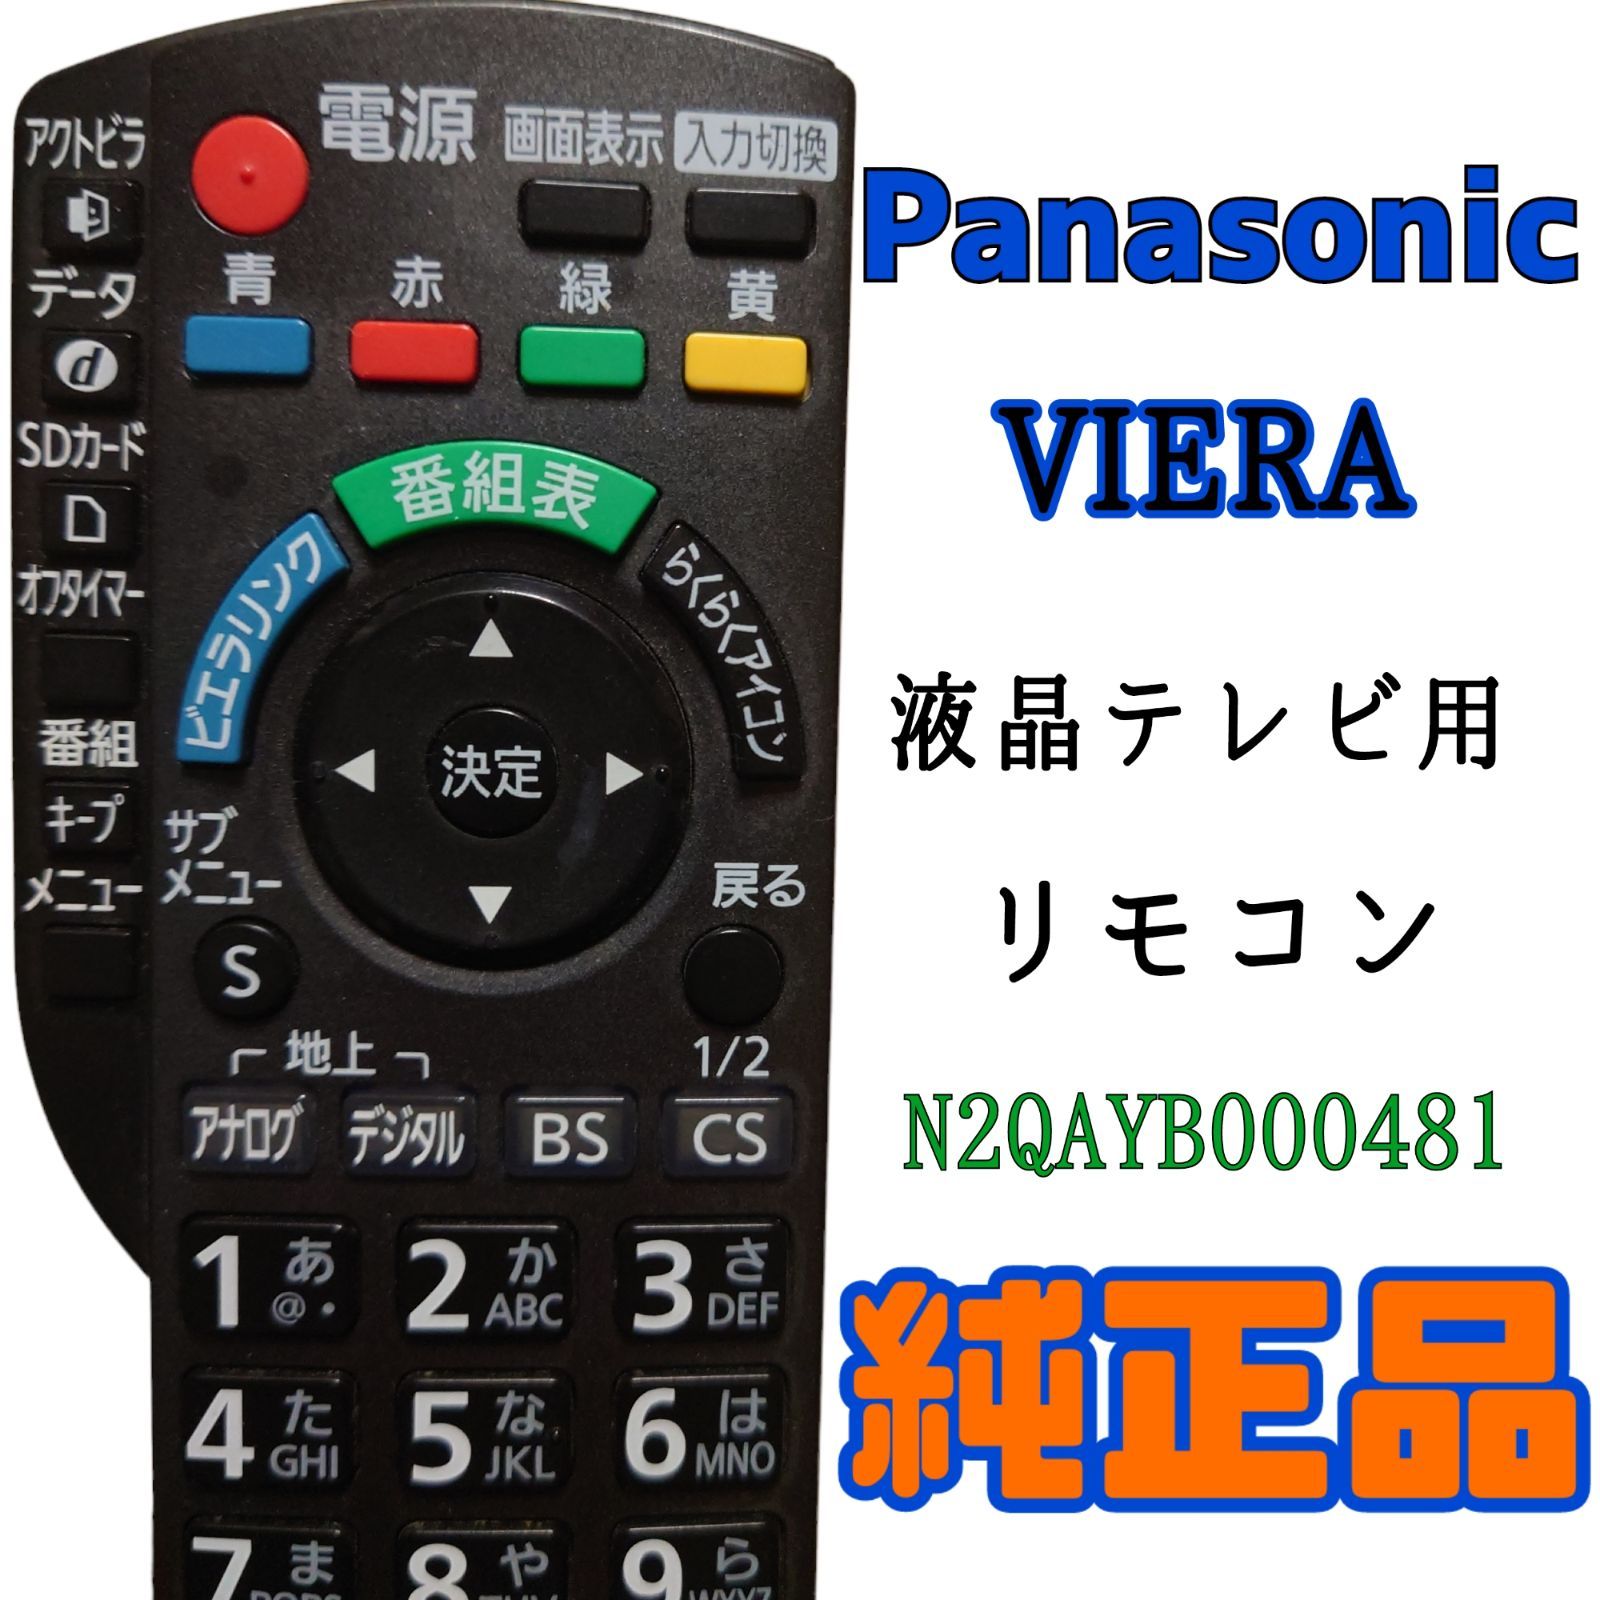 Panasonic N2QAYB000481